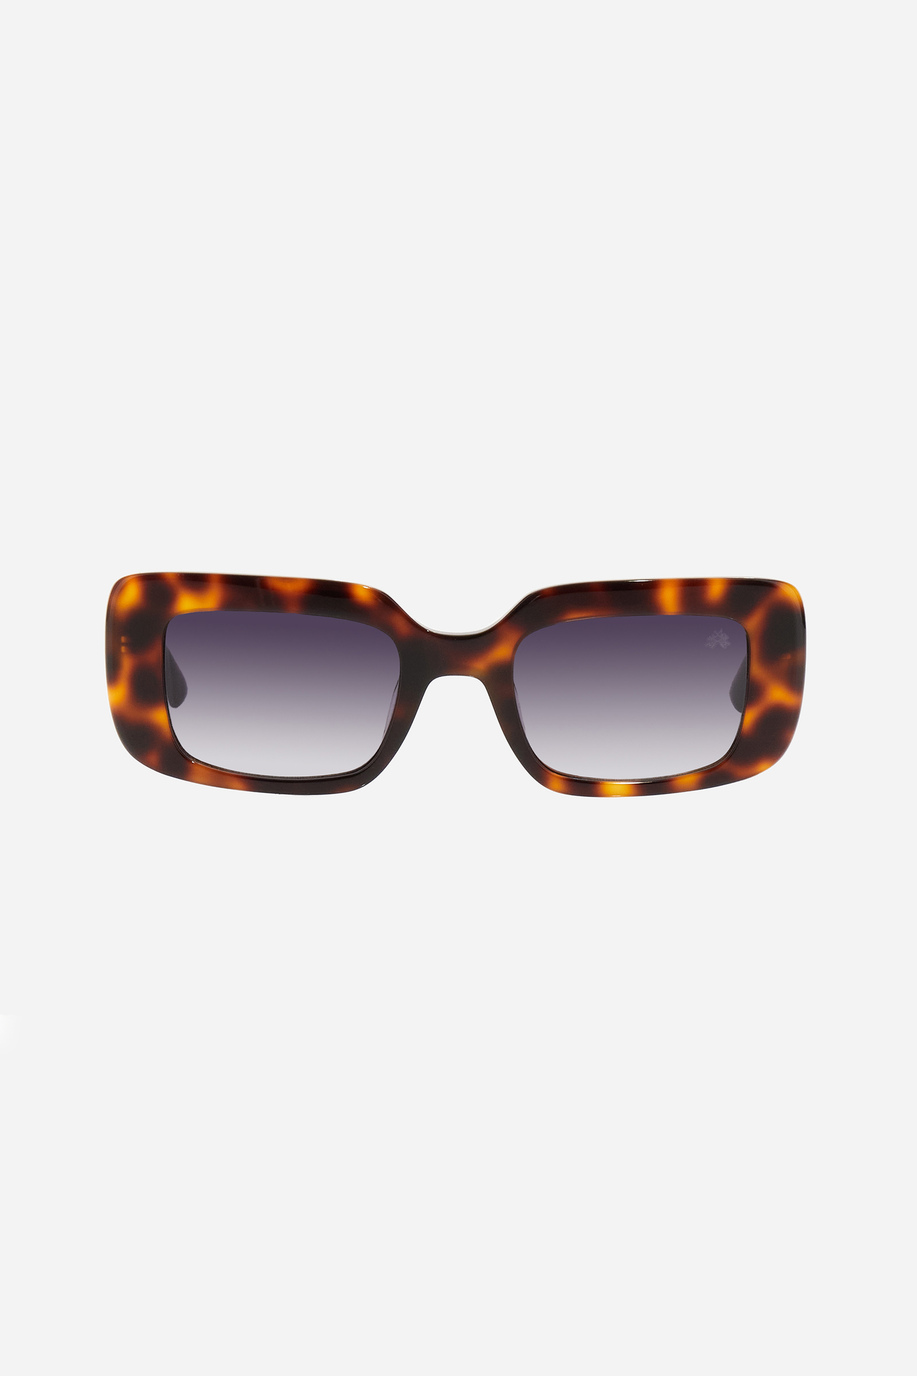 Square model women's sunglasses - Preview | La Martina - Official Online Shop